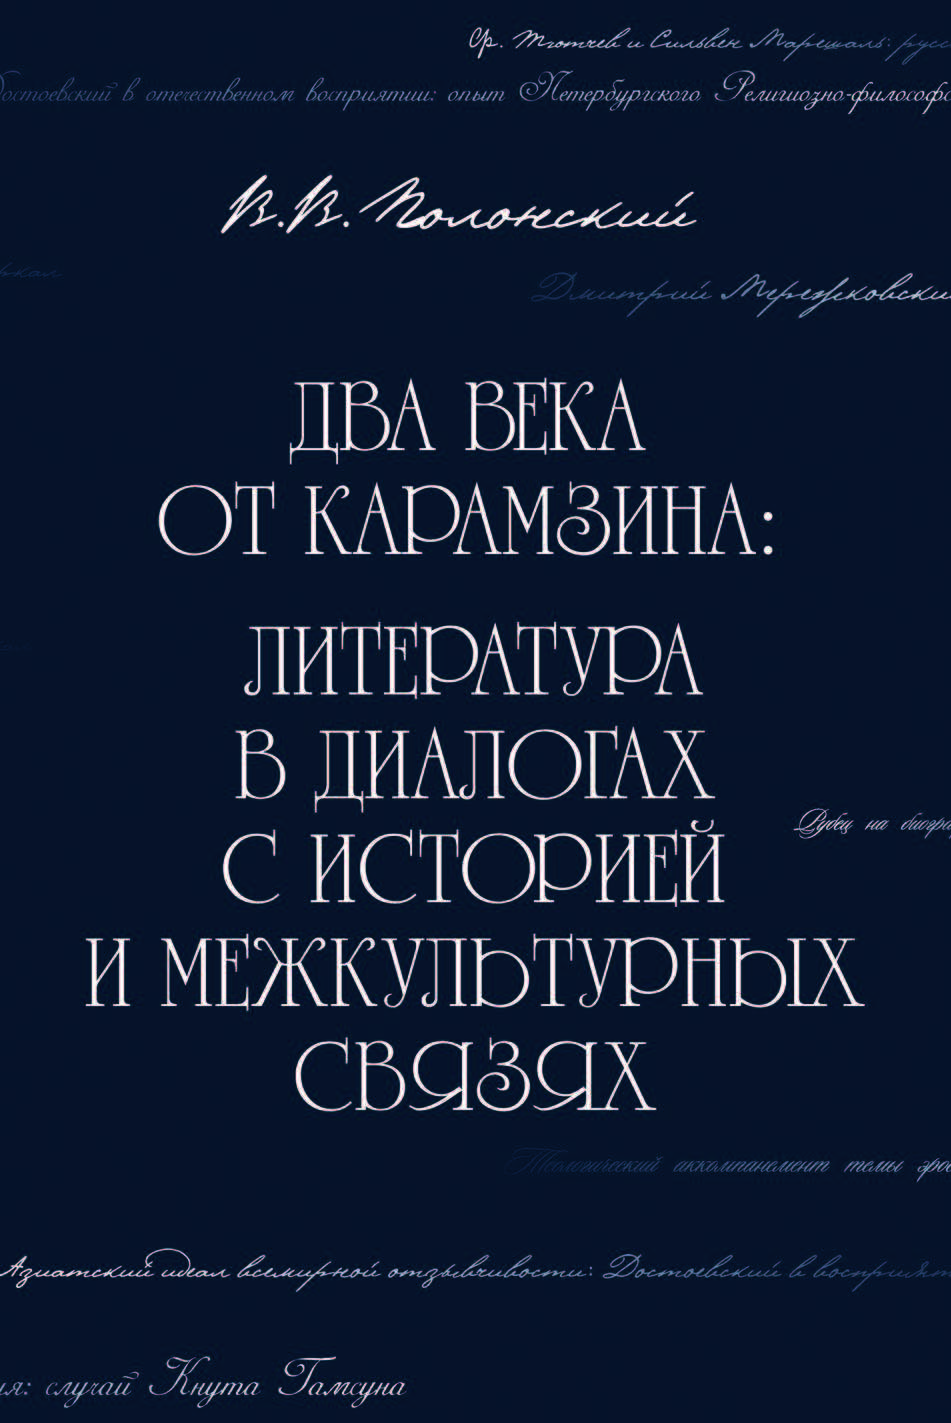 Обложка Два века от Карамзина: Литература в диалогах с историей и межкультурных связях